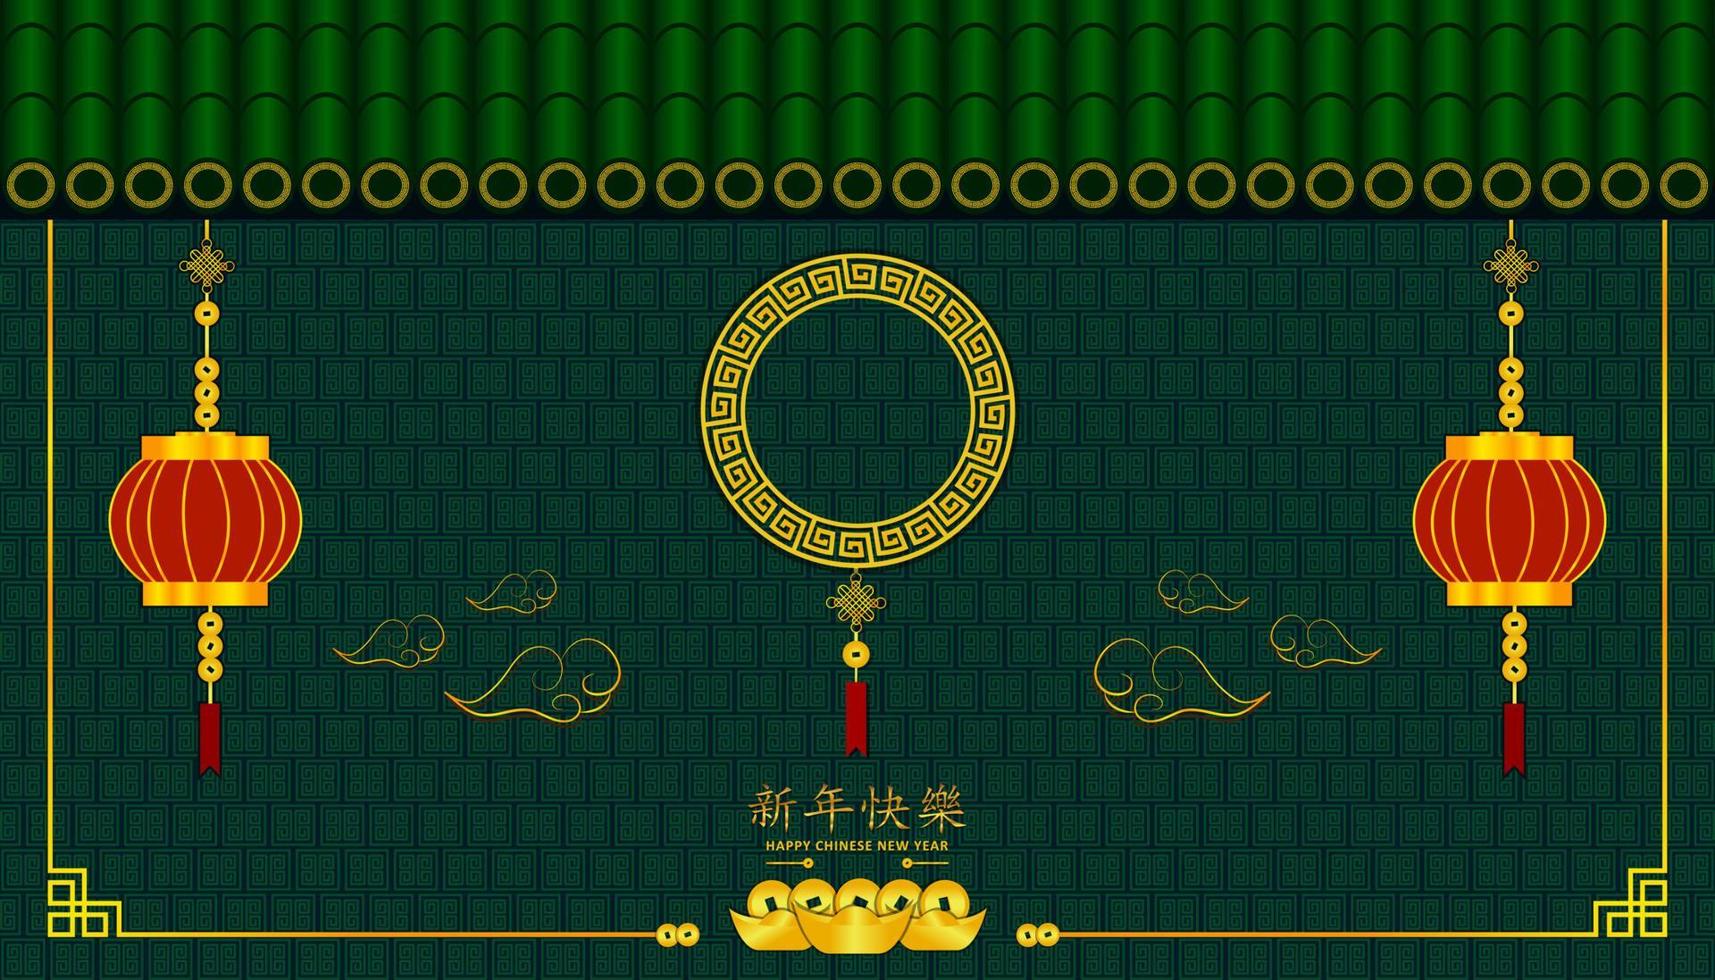 gott nytt kinesiskt år. Xin nian kual le karaktärer för cny festival. taket och väggen med molnlykta guldmynt och pengar. mönster bakgrund design kort affisch. asiatisk semester. vektor